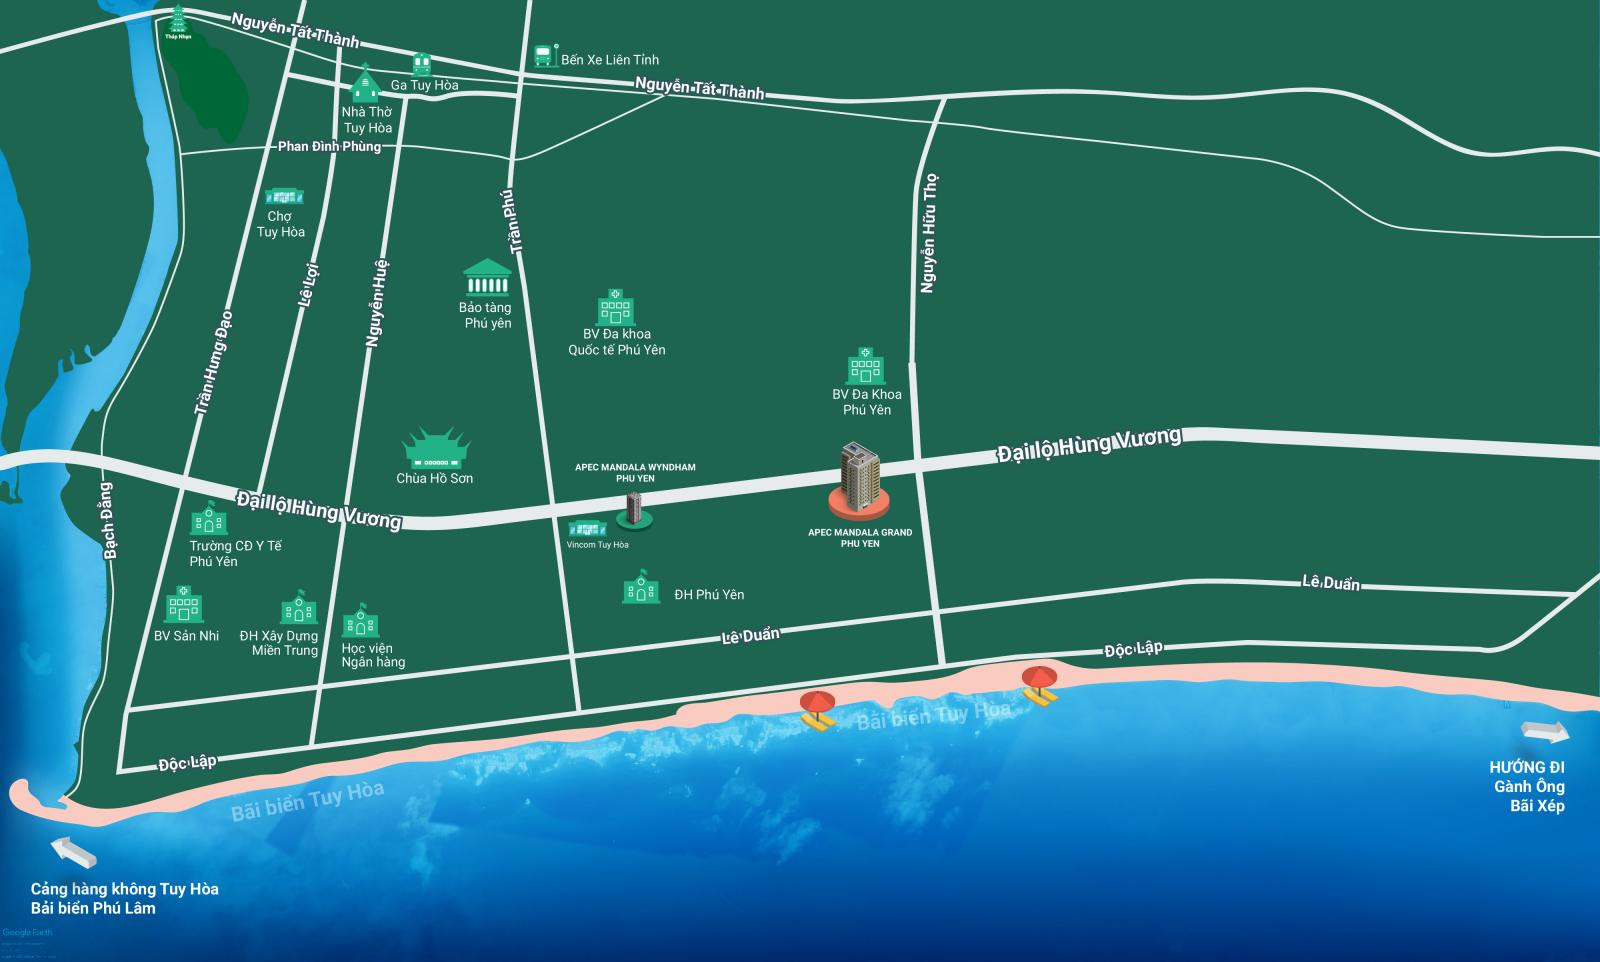 Vị trí dự án Apec Mandala Grand Phú Yên trên bản đồ